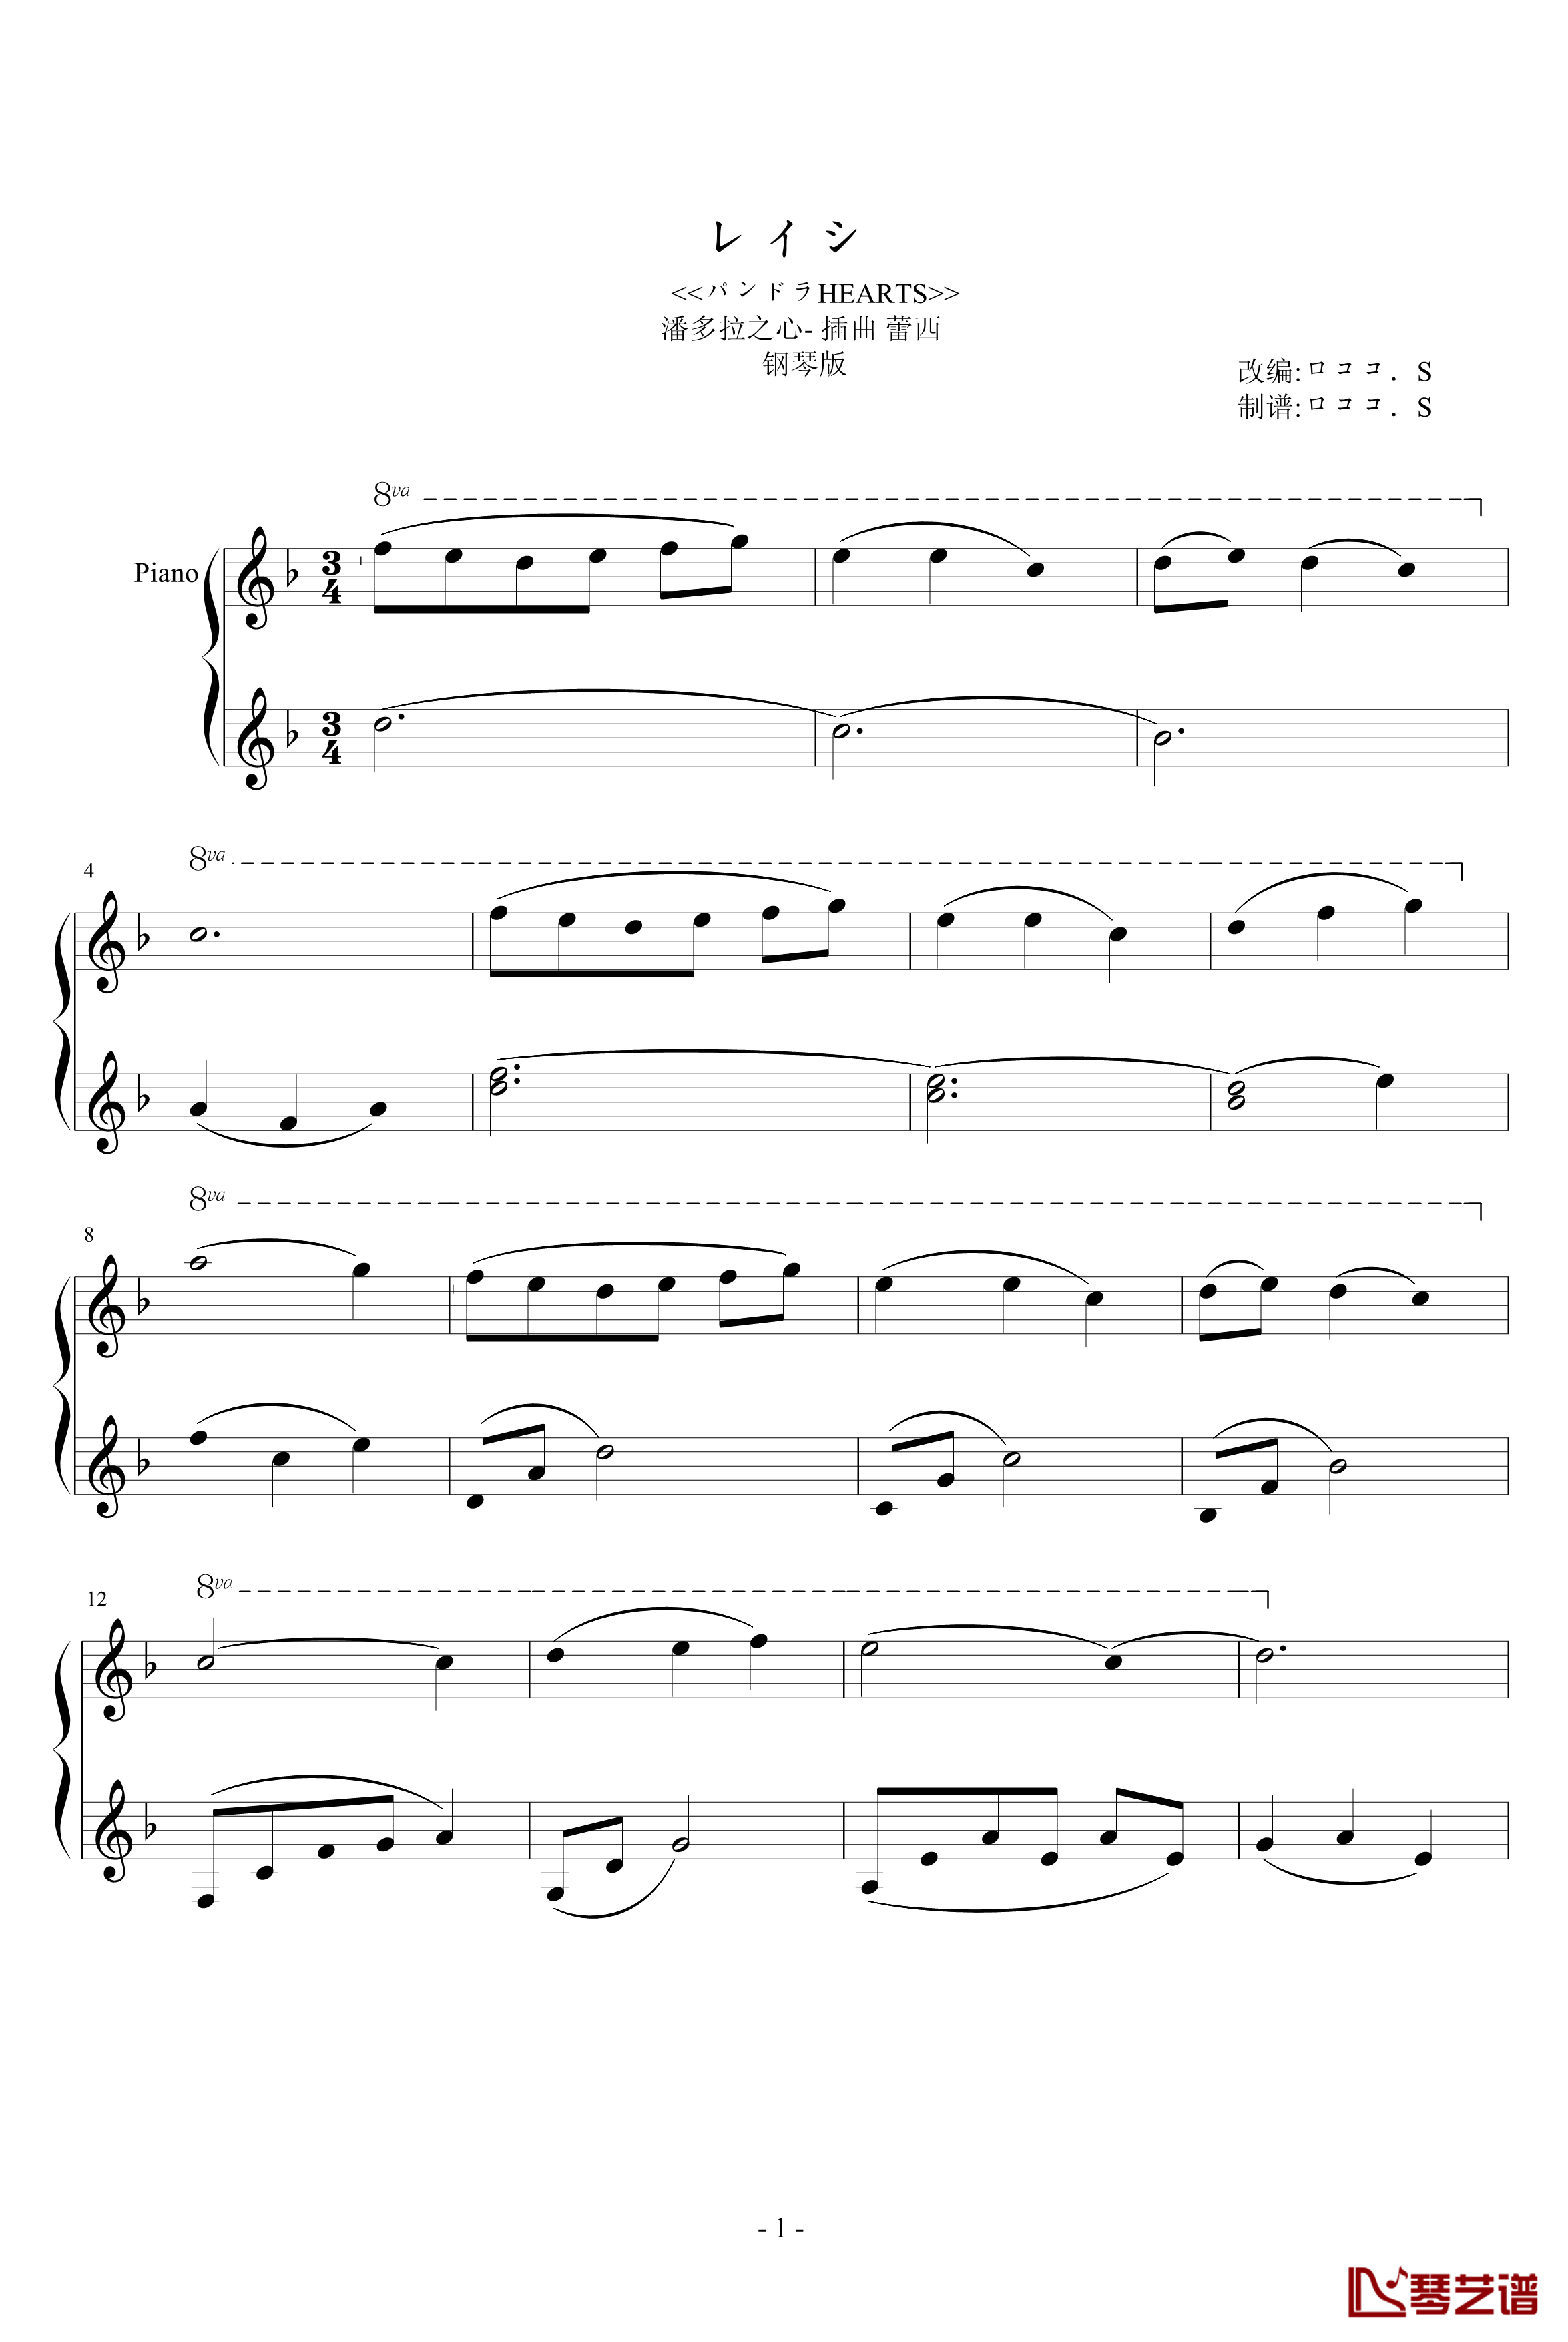 潘多拉之心插曲蕾西钢琴谱-简化钢琴版-影视1